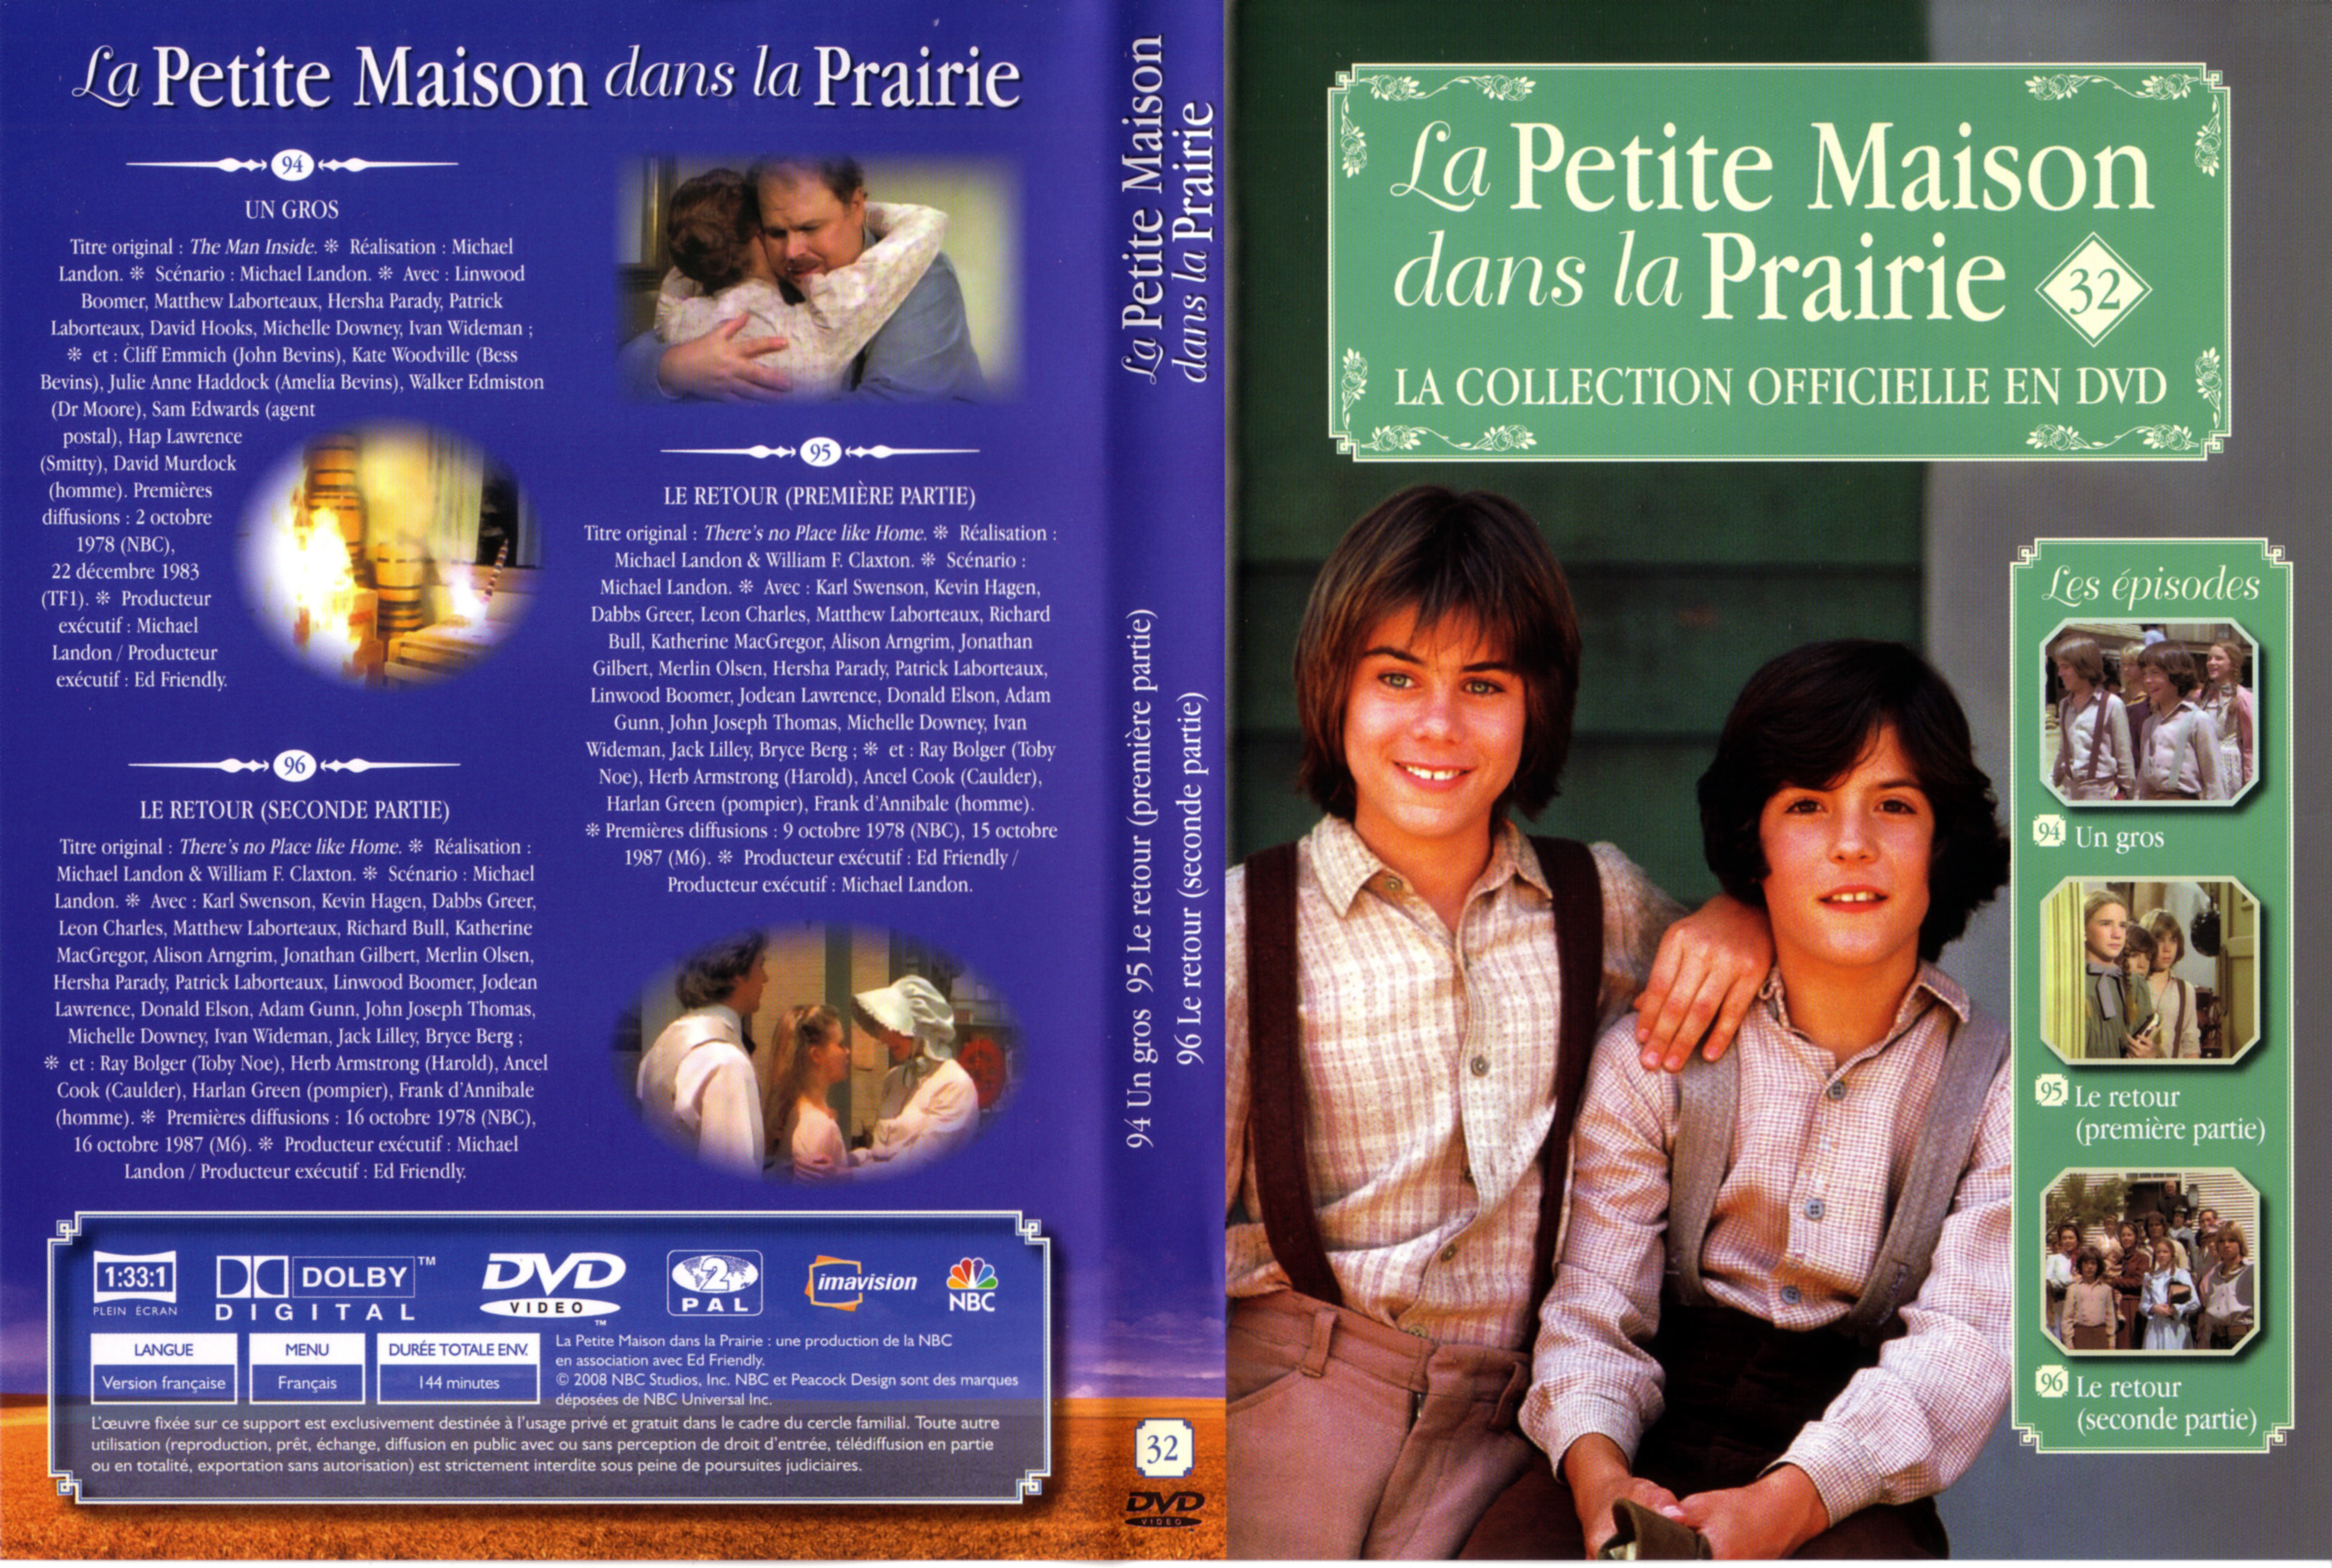 Jaquette DVD La petite maison dans la prairie La Collection vol 32